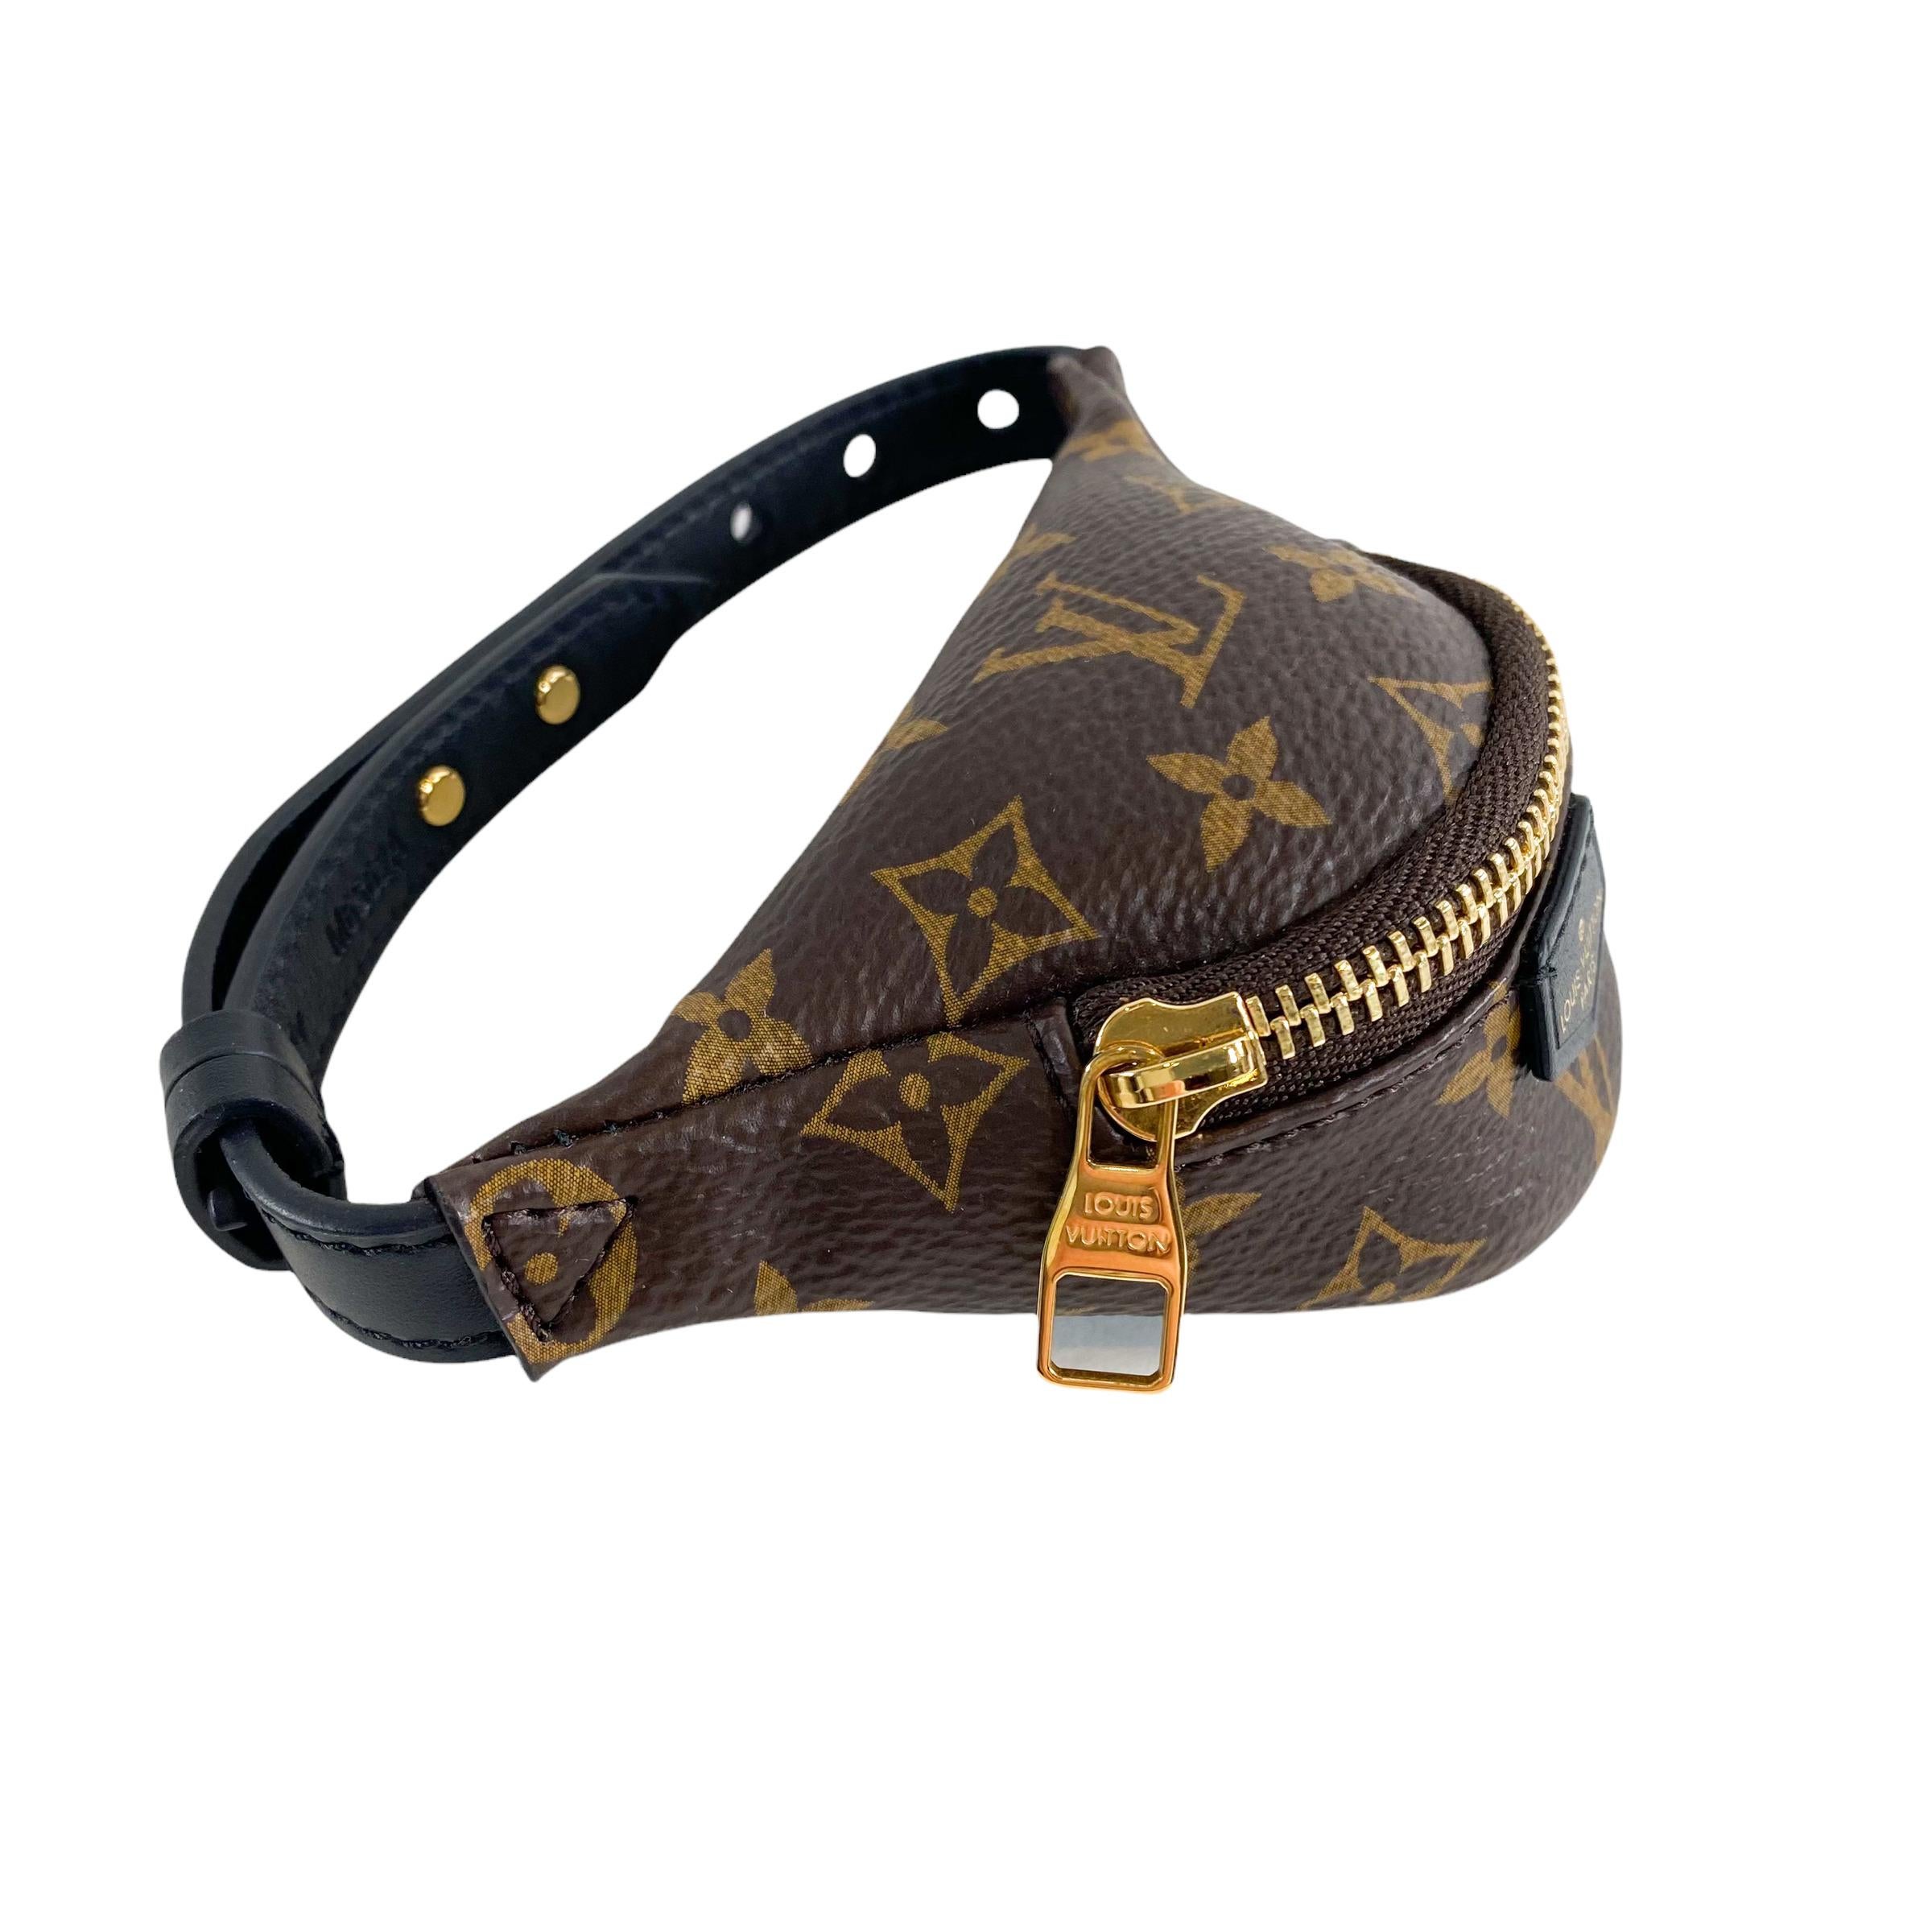 Louis Vuitton Bracelet de sac à dos de soirée

Il s'agit d'un authentique bracelet de sac à dos Louis Vuitton. Ce bracelet présente un mini monogramme avec une fermeture à glissière. 

Informations complémentaires :
Accessoires inclus : Sac de